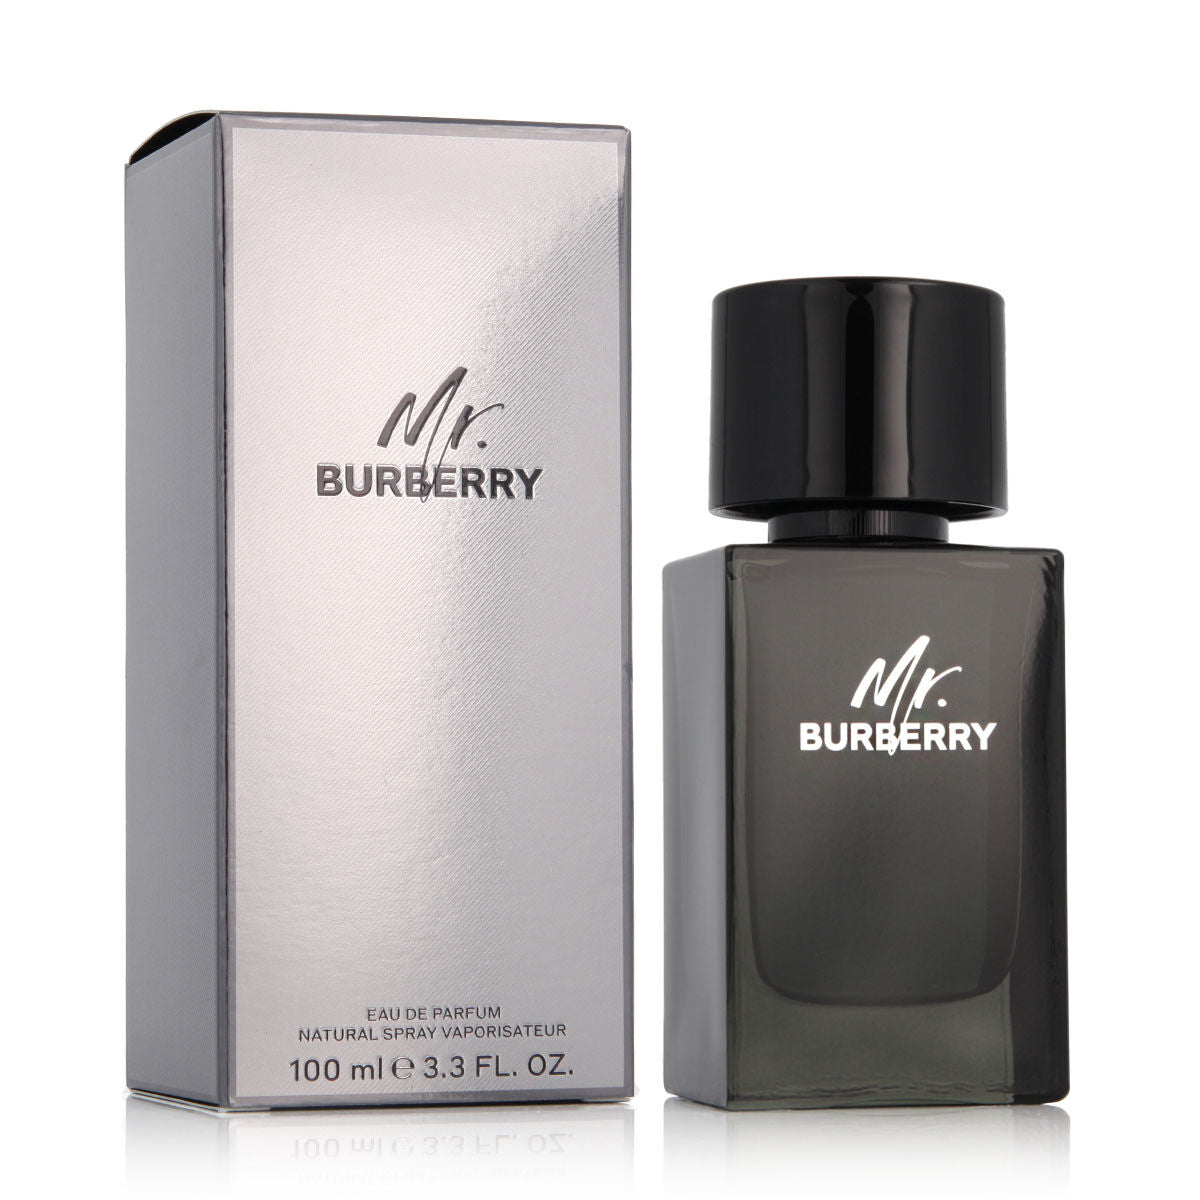 Άρωμα ανδρών Burberry EDP κ. Burberry 100 ml